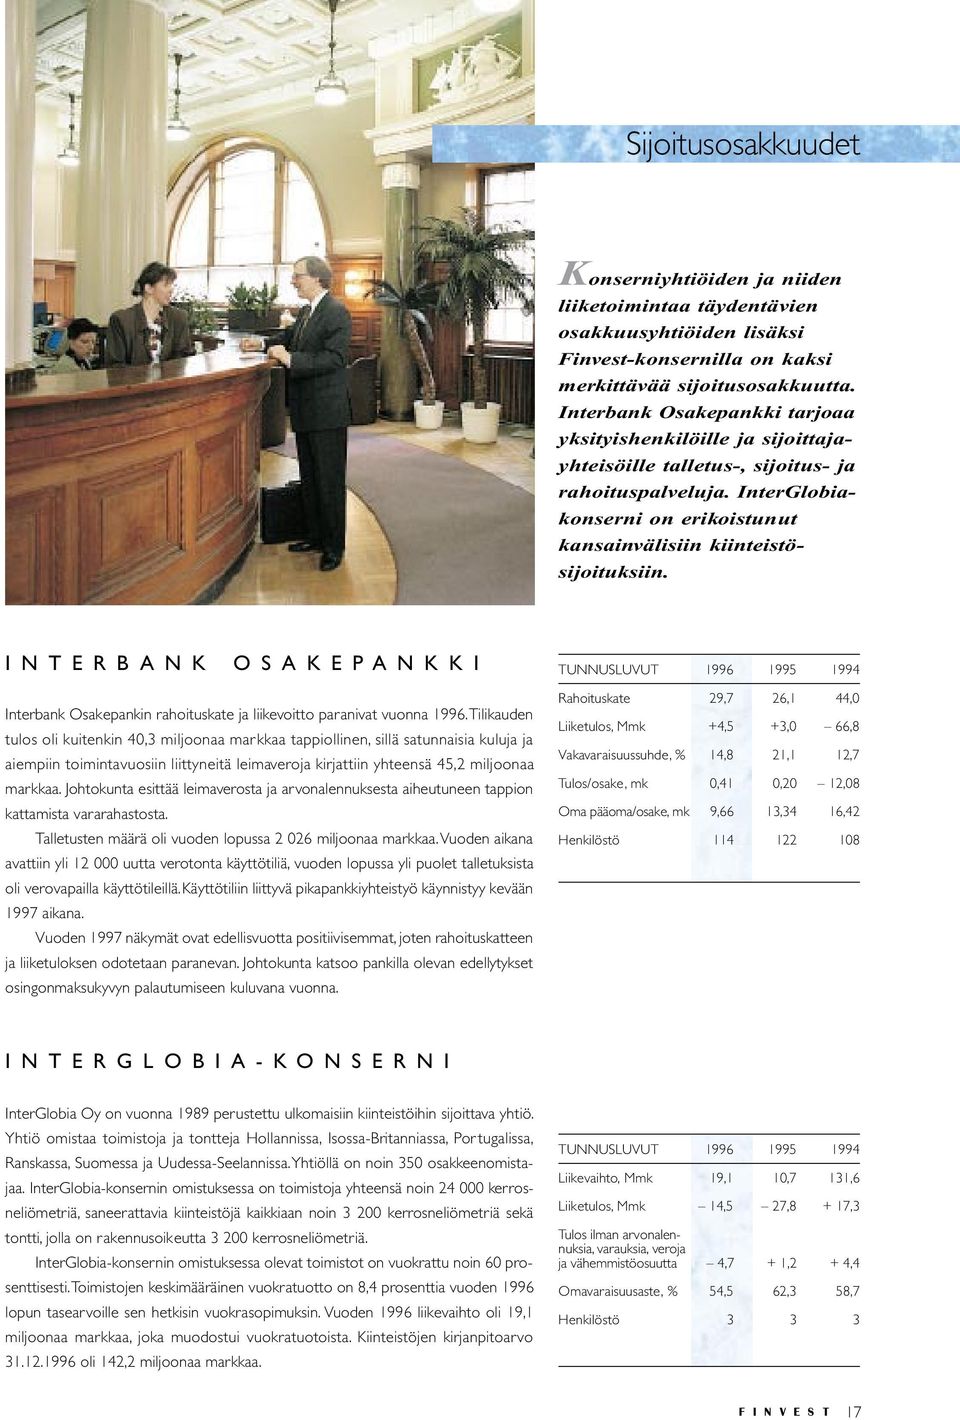 INTERBANK OSAKEPANKKI Interbank Osakepankin rahoituskate ja liikevoitto paranivat vuonna 1996.